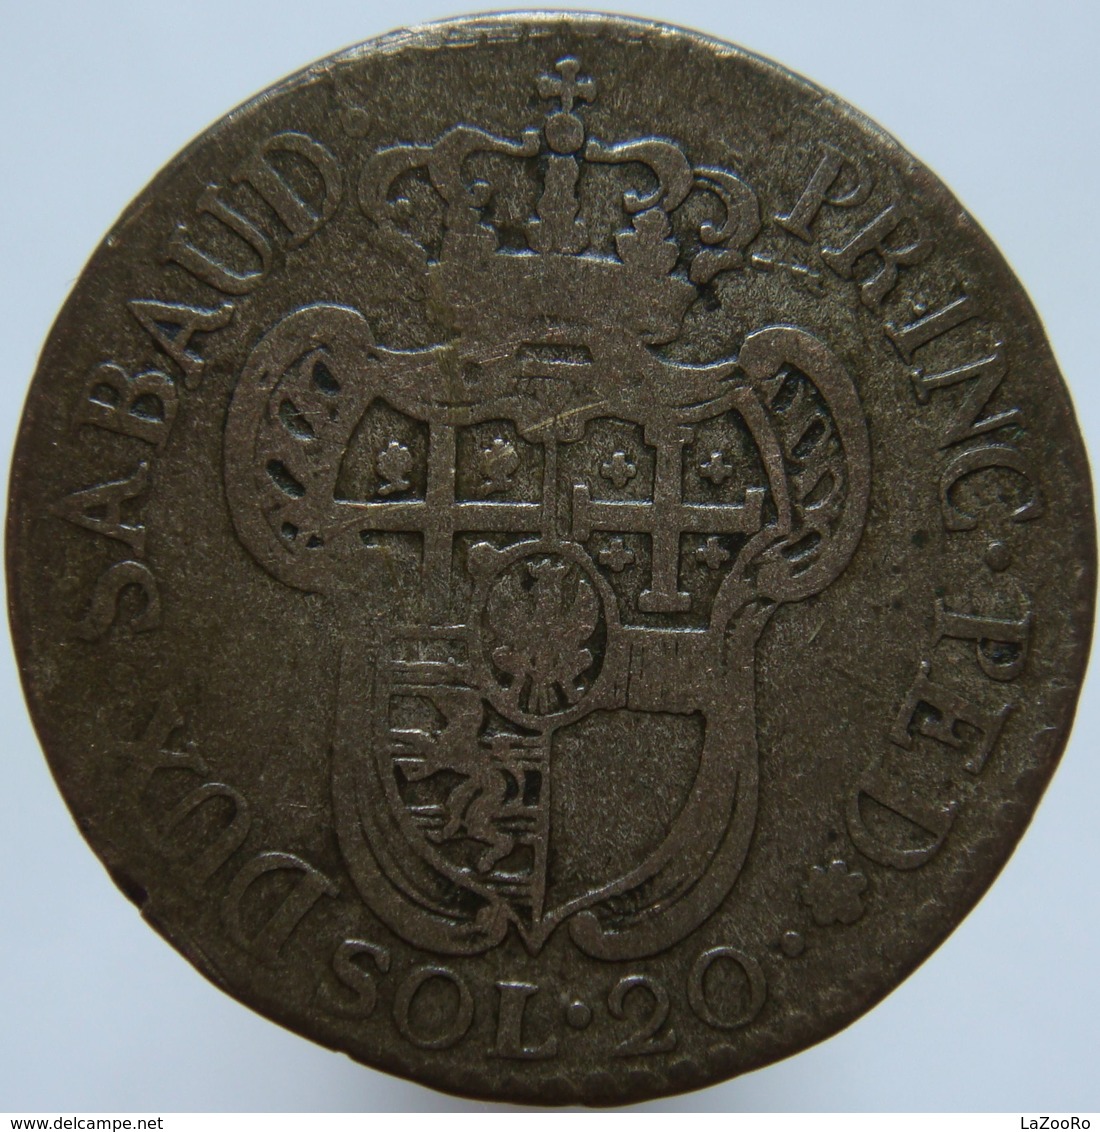 LaZooRo: Italy SARDINIA 20 Soldi 1795 VF - Silver - Italian Piedmont-Sardinia-Savoie